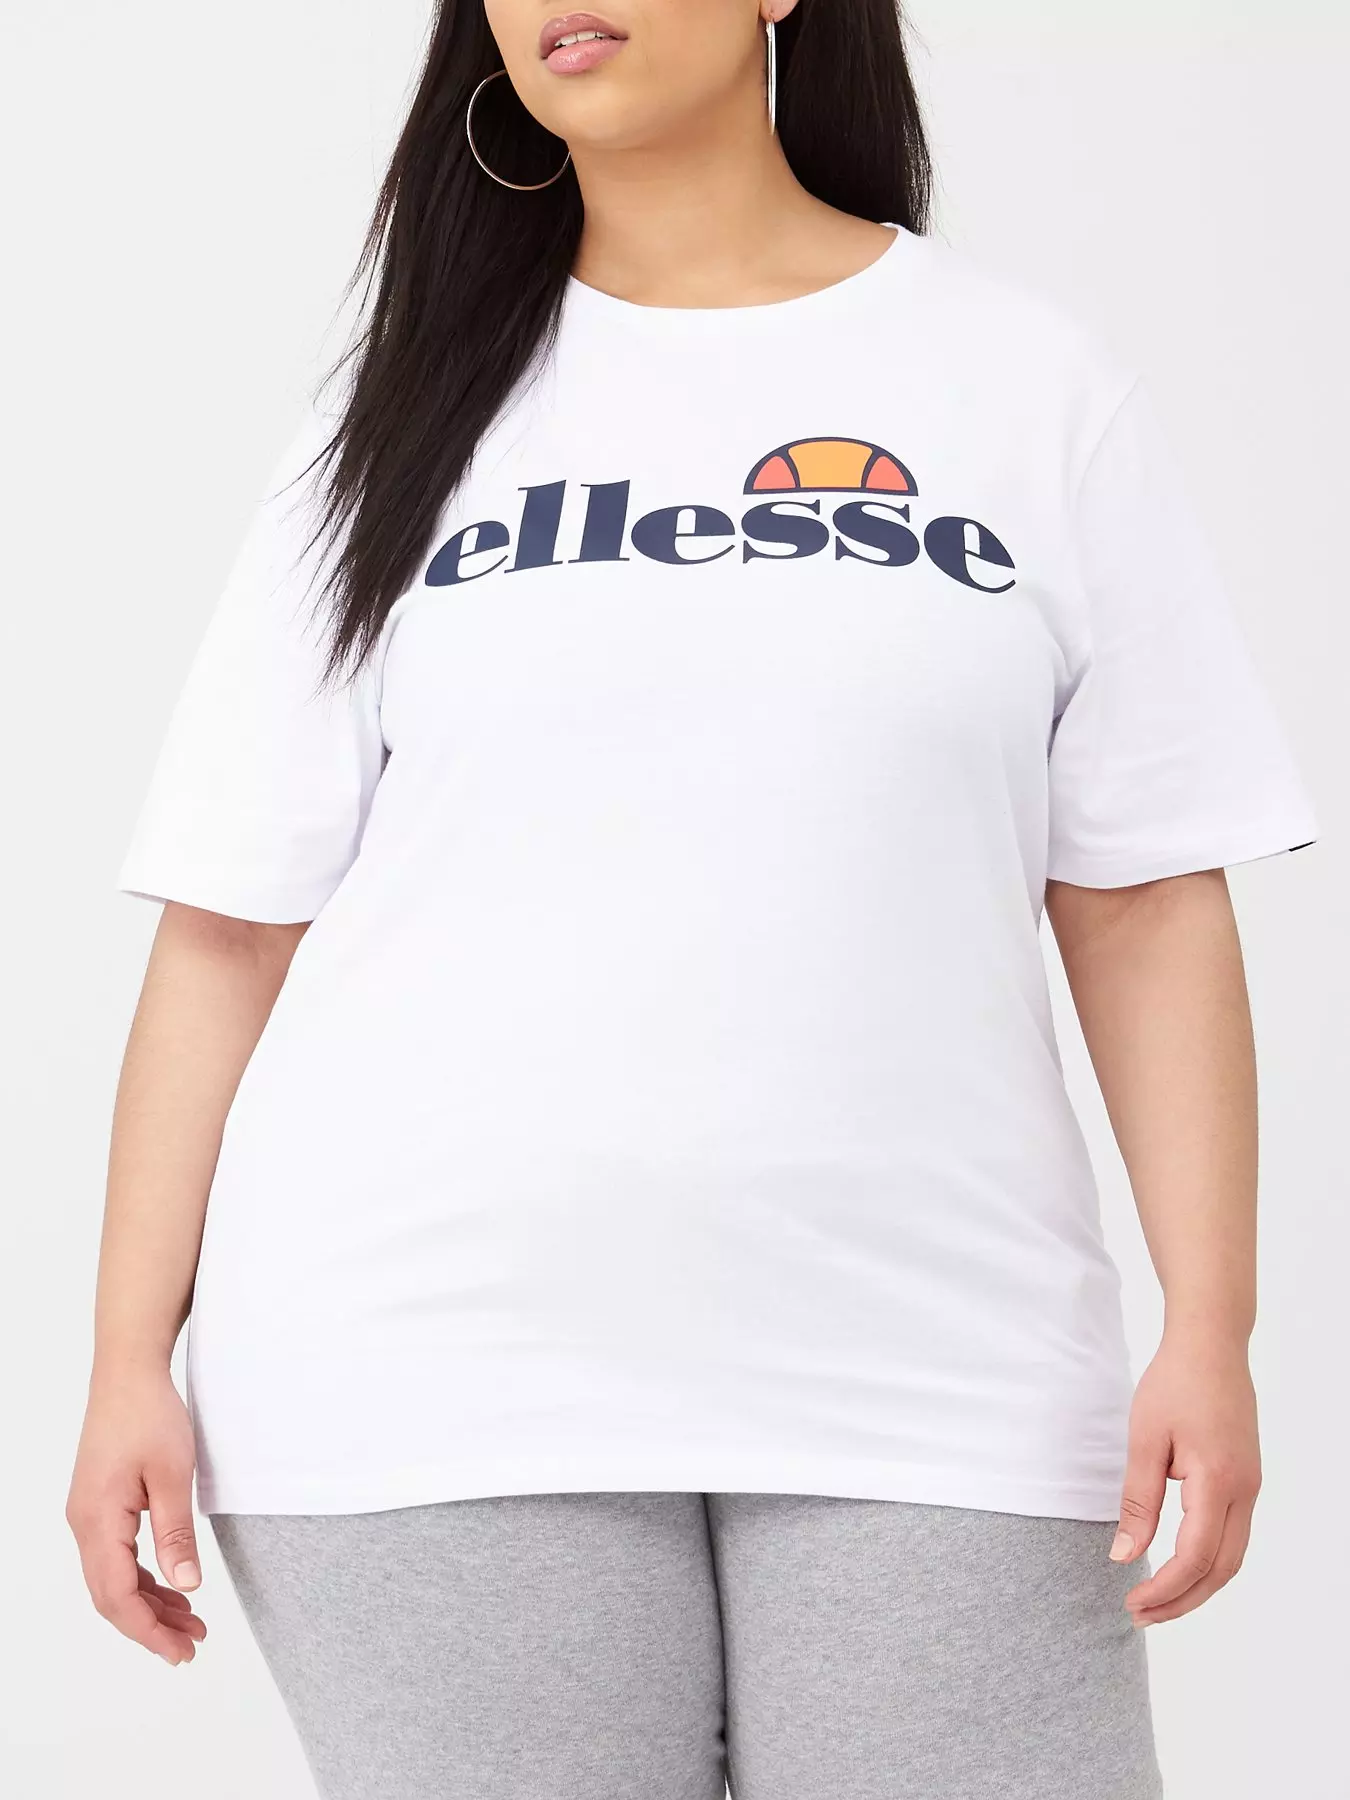 Ellesse Castel Womens Legging (White), Ellesse, Womens Clothing Brands, Womens Clothing